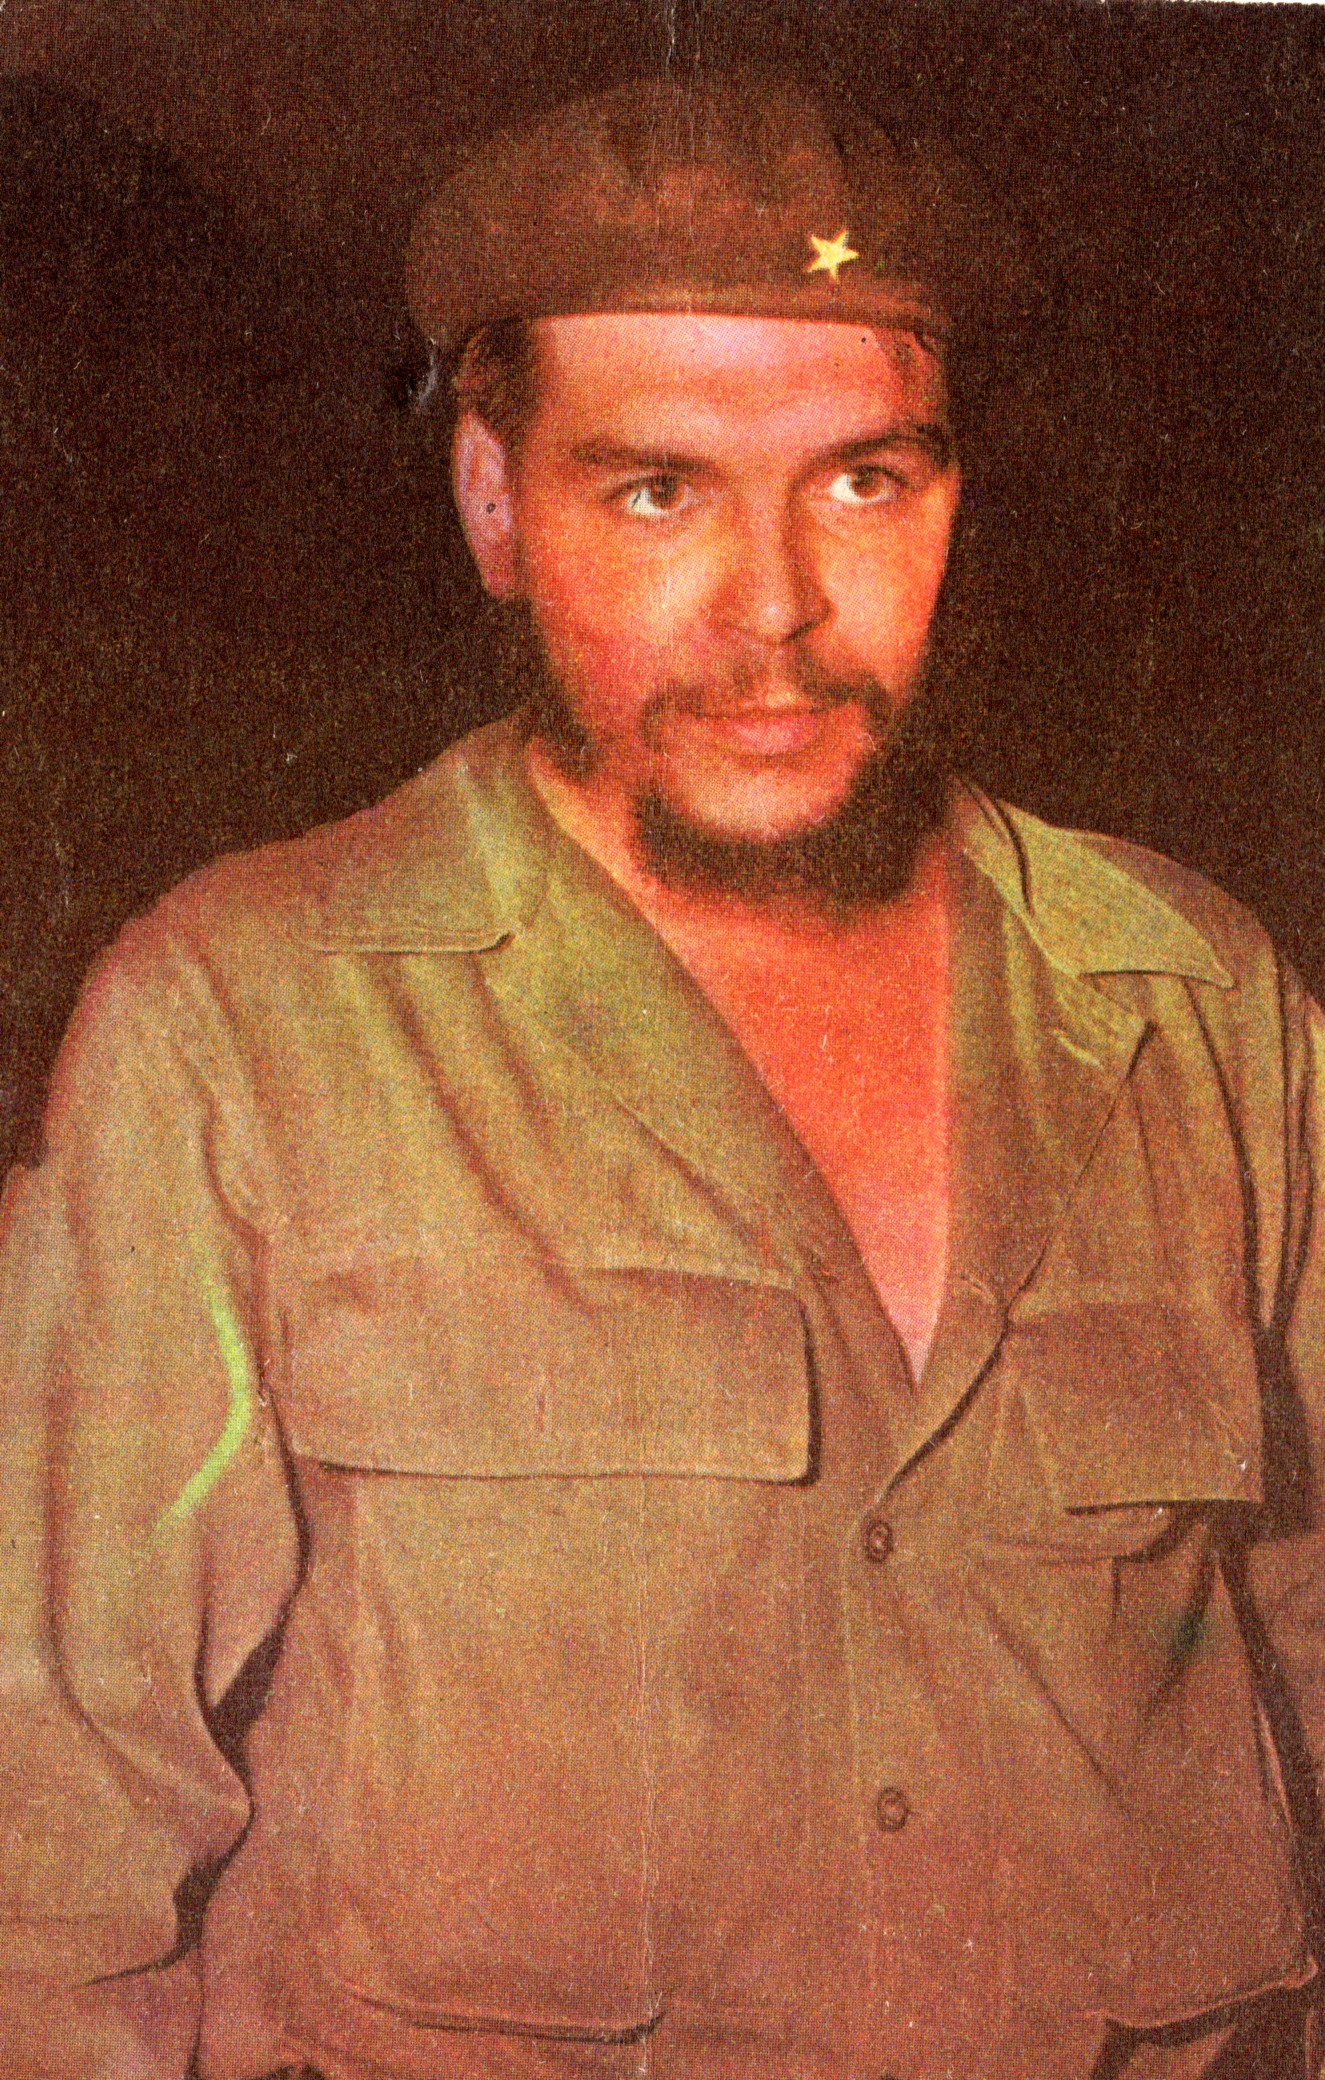 Biografii comentate (XXIII). Che Guevara, icoana mondială a revoluţionarului perfect/ de Călin Hentea